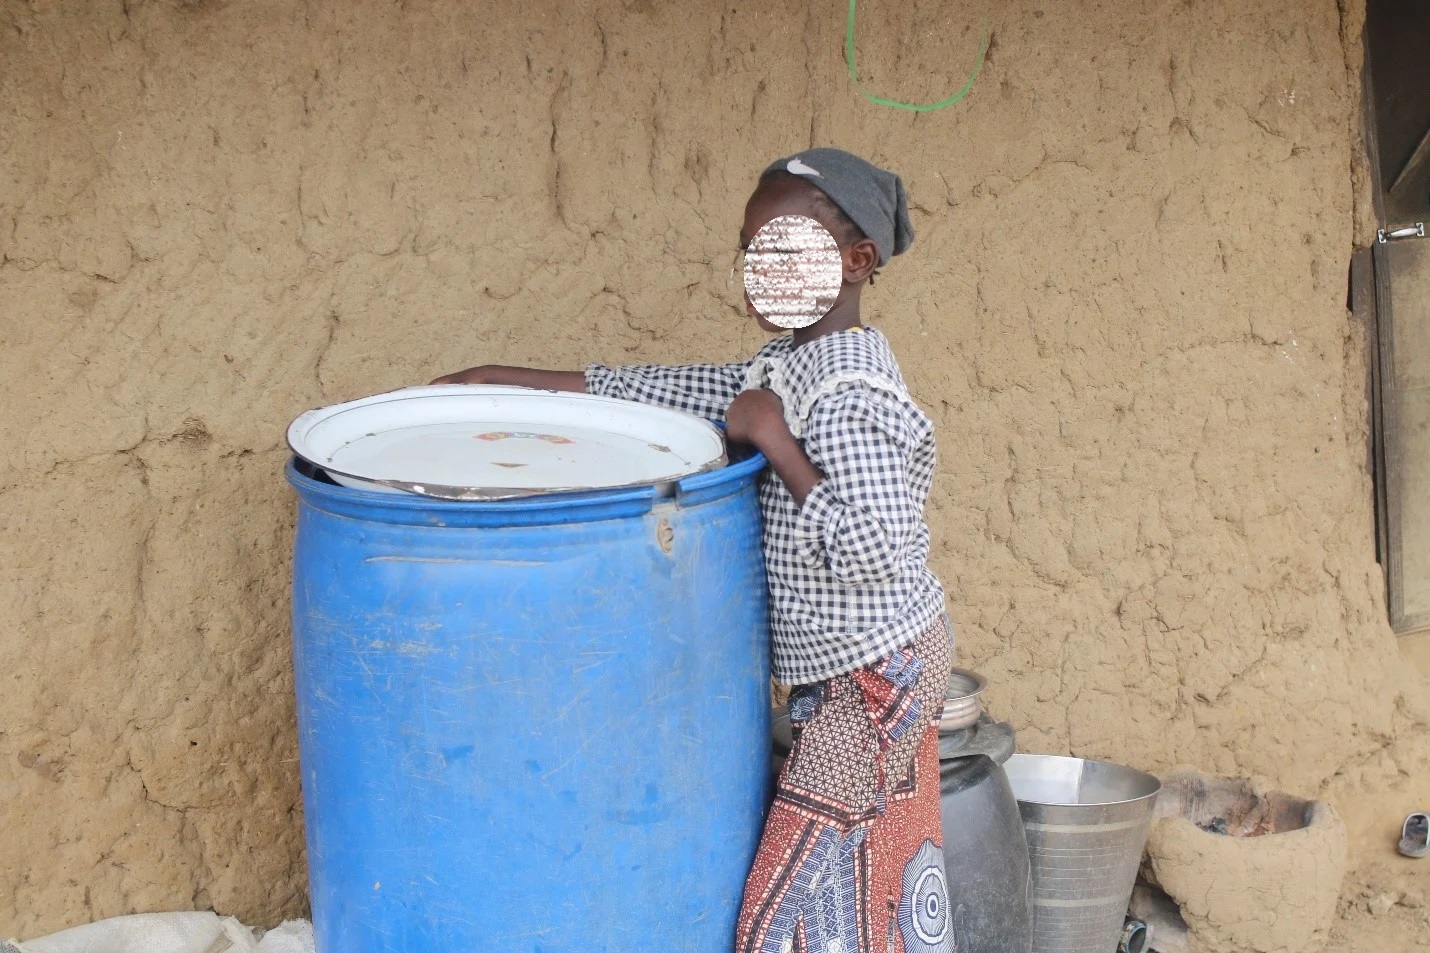 Fati standing beside an empty drum                                                                                           Photo: Emmanuel Adegoke